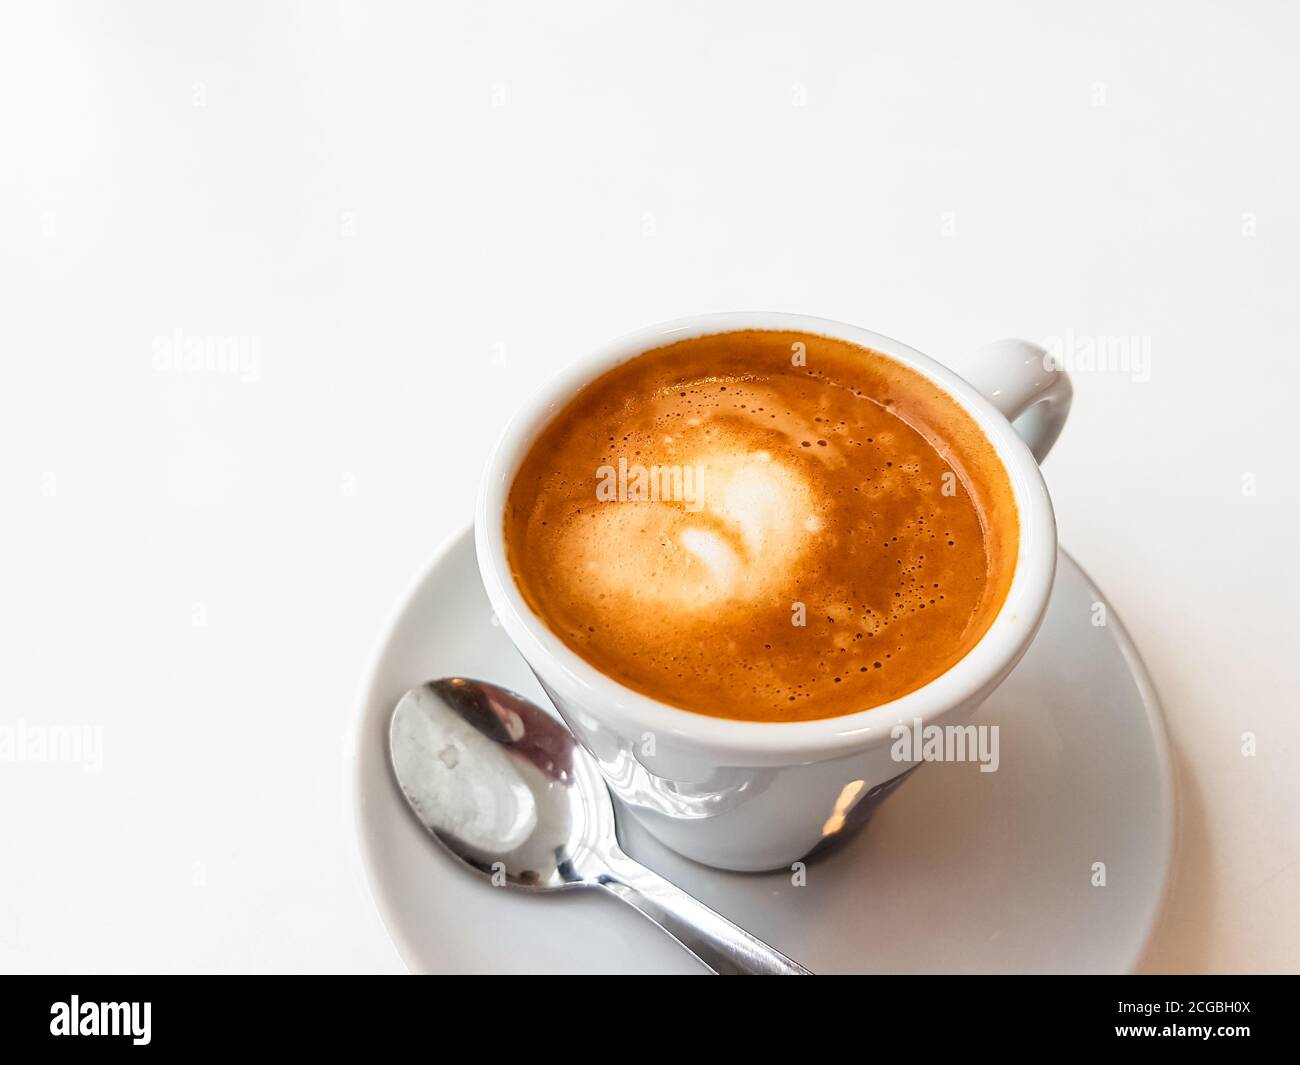 Cortado-spanischer Kaffee mit Milch in einer kleinen Tasse. Stockfoto